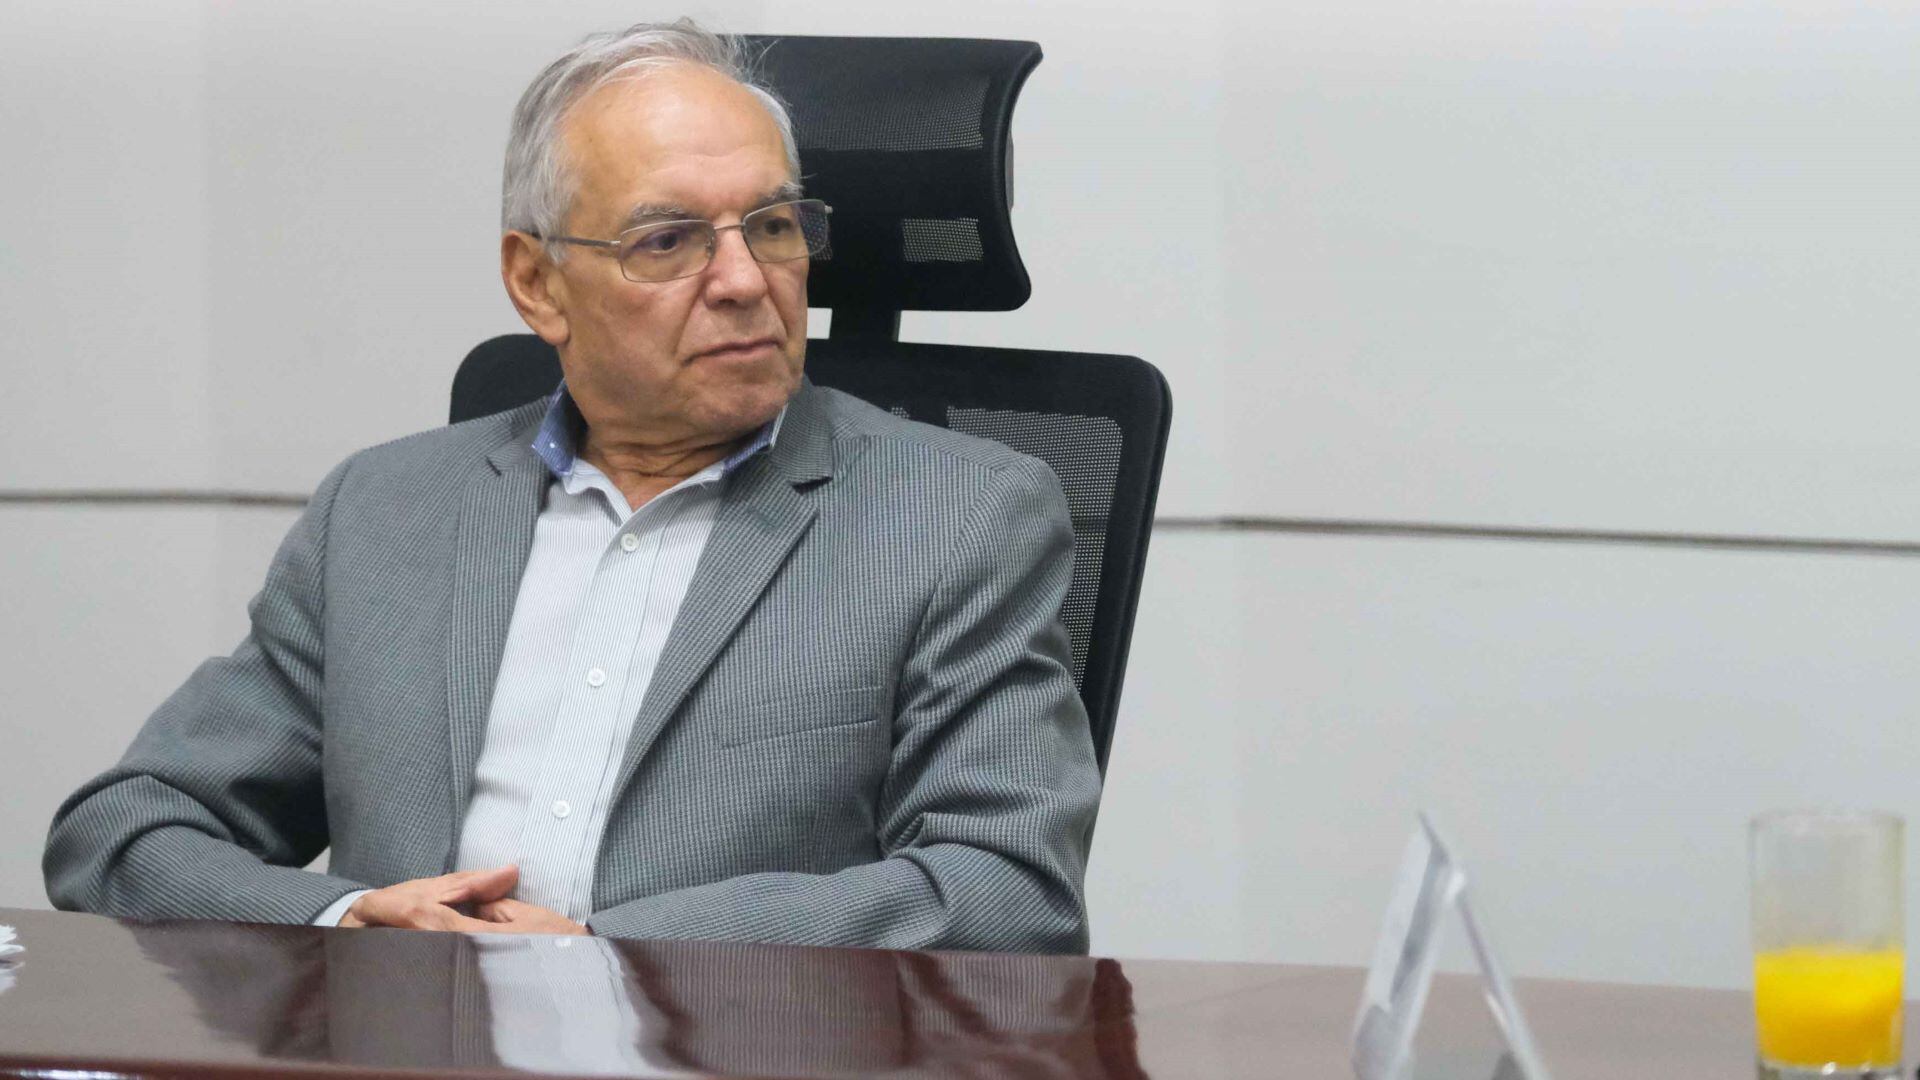 Mauricio Cárdenas le mandó un mensaje al ministro de Hacienda: "Tiene que pararse en la raya" - crédito Presidencia de la República